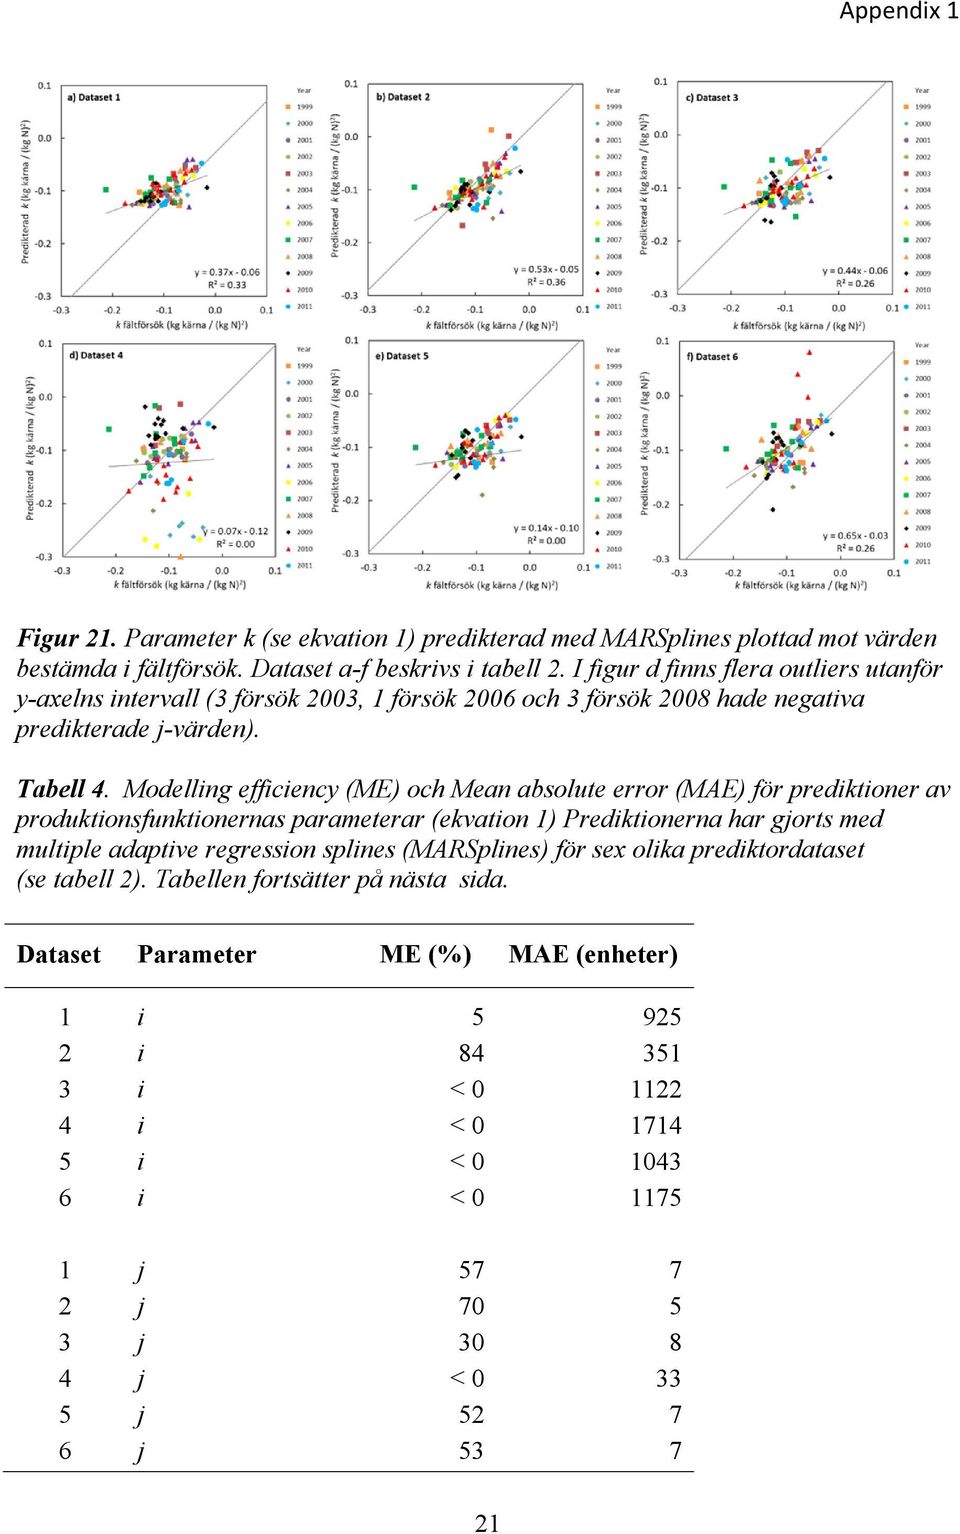 Modelling efficiency (ME) och Mean absolute error (MAE) för prediktioner av produktionsfunktionernas parameterar (ekvation 1) Prediktionerna har gjorts med multiple adaptive regression